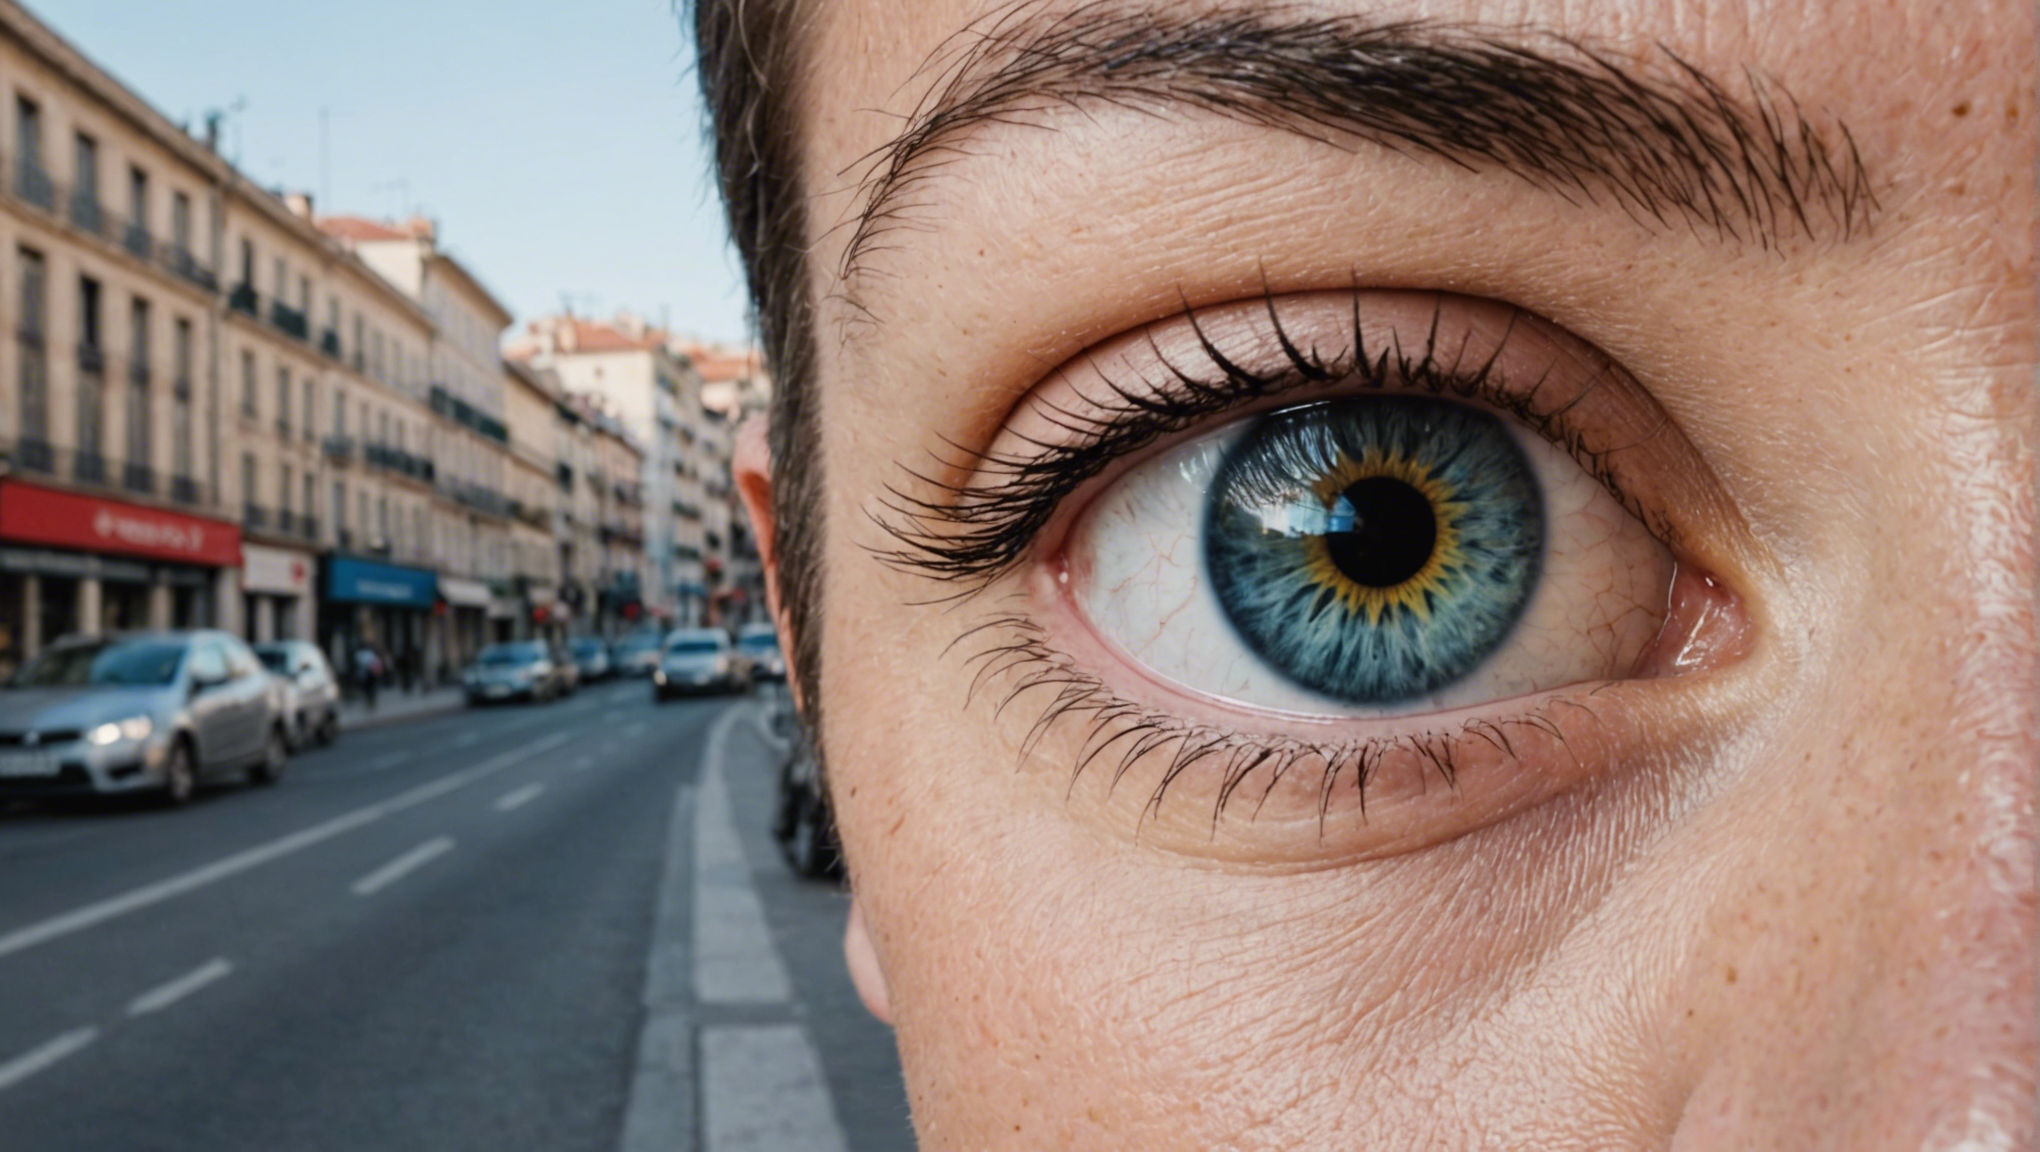 découvrez tout ce qu'il faut savoir sur l'opération des yeux à marseille pour retrouver une vision parfaite : procédure, avantages, risques et conseils.